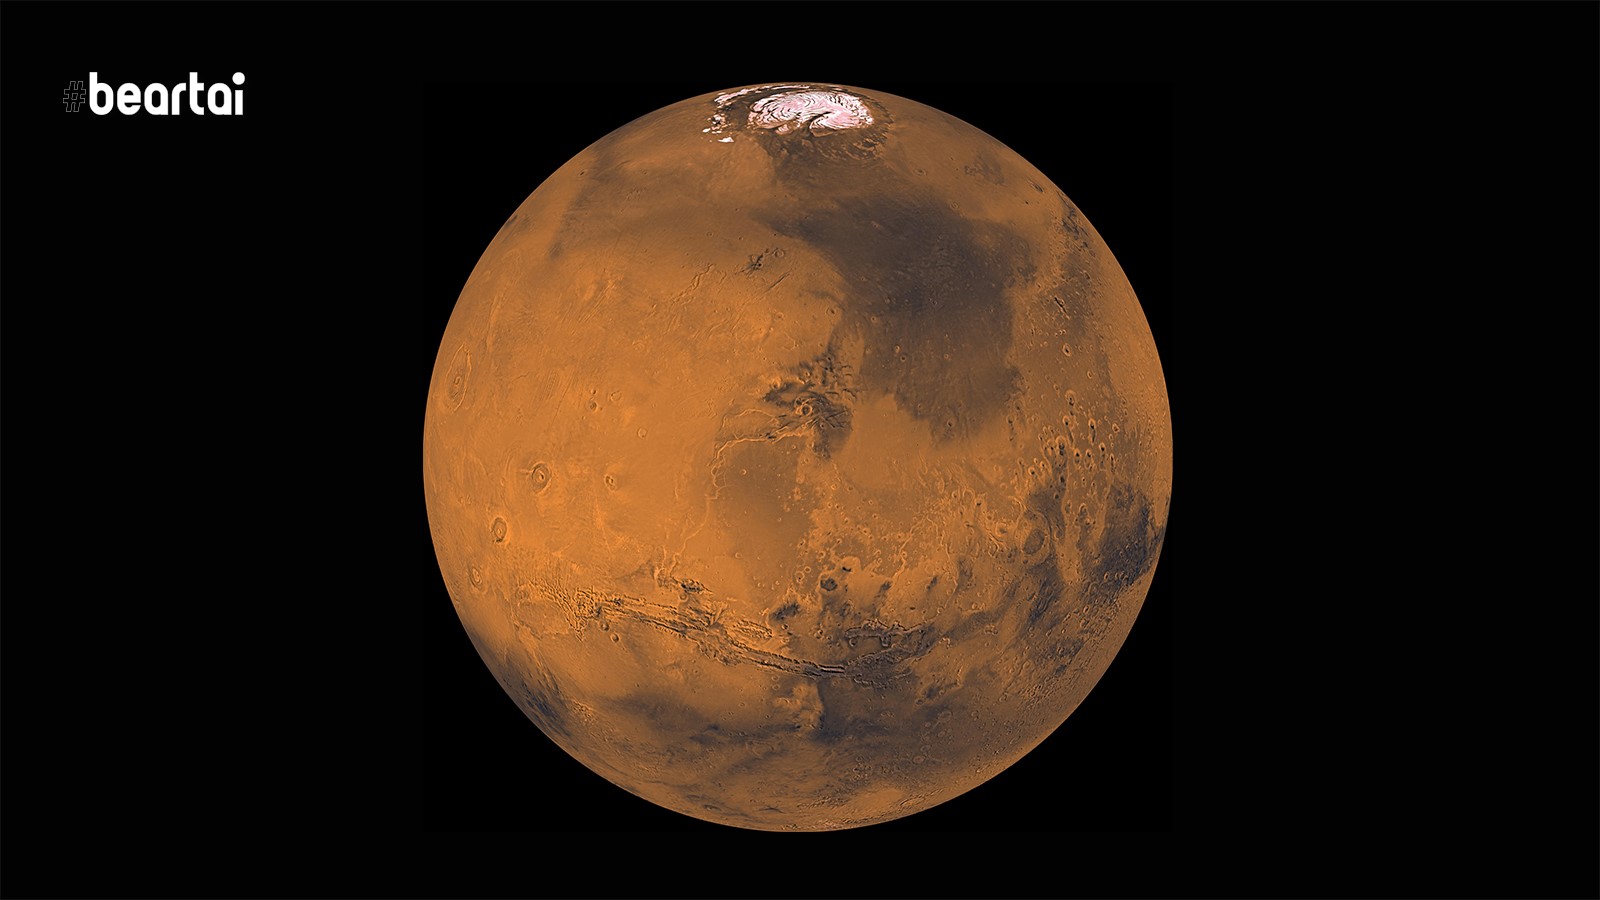 ดาวอังคาร : ดาวเคราะห์สีแดง